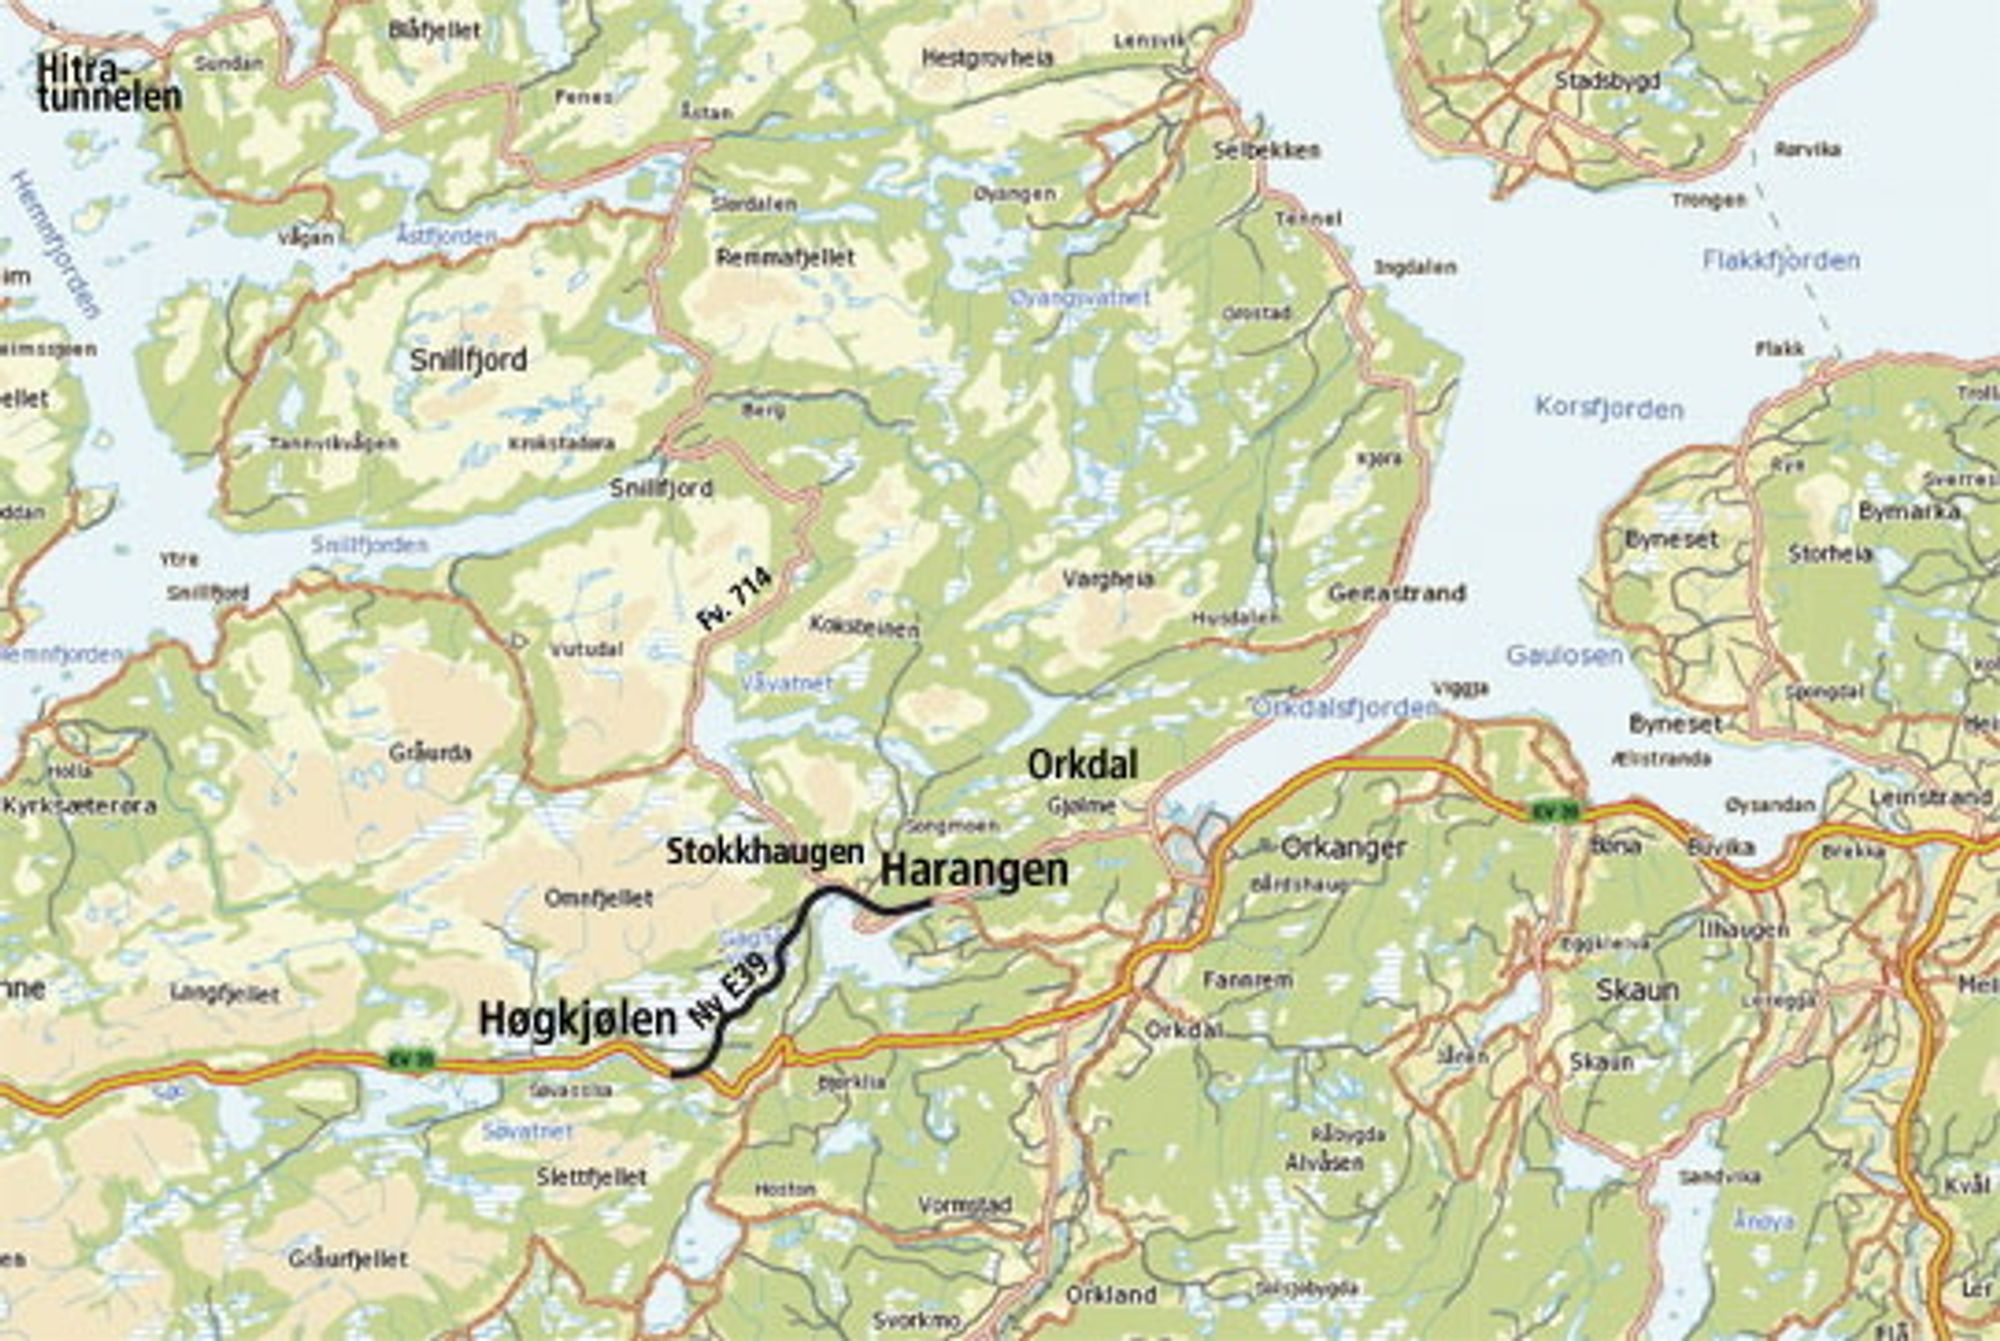 Oppstart på E 39 Høgkjølen – Harangen i september